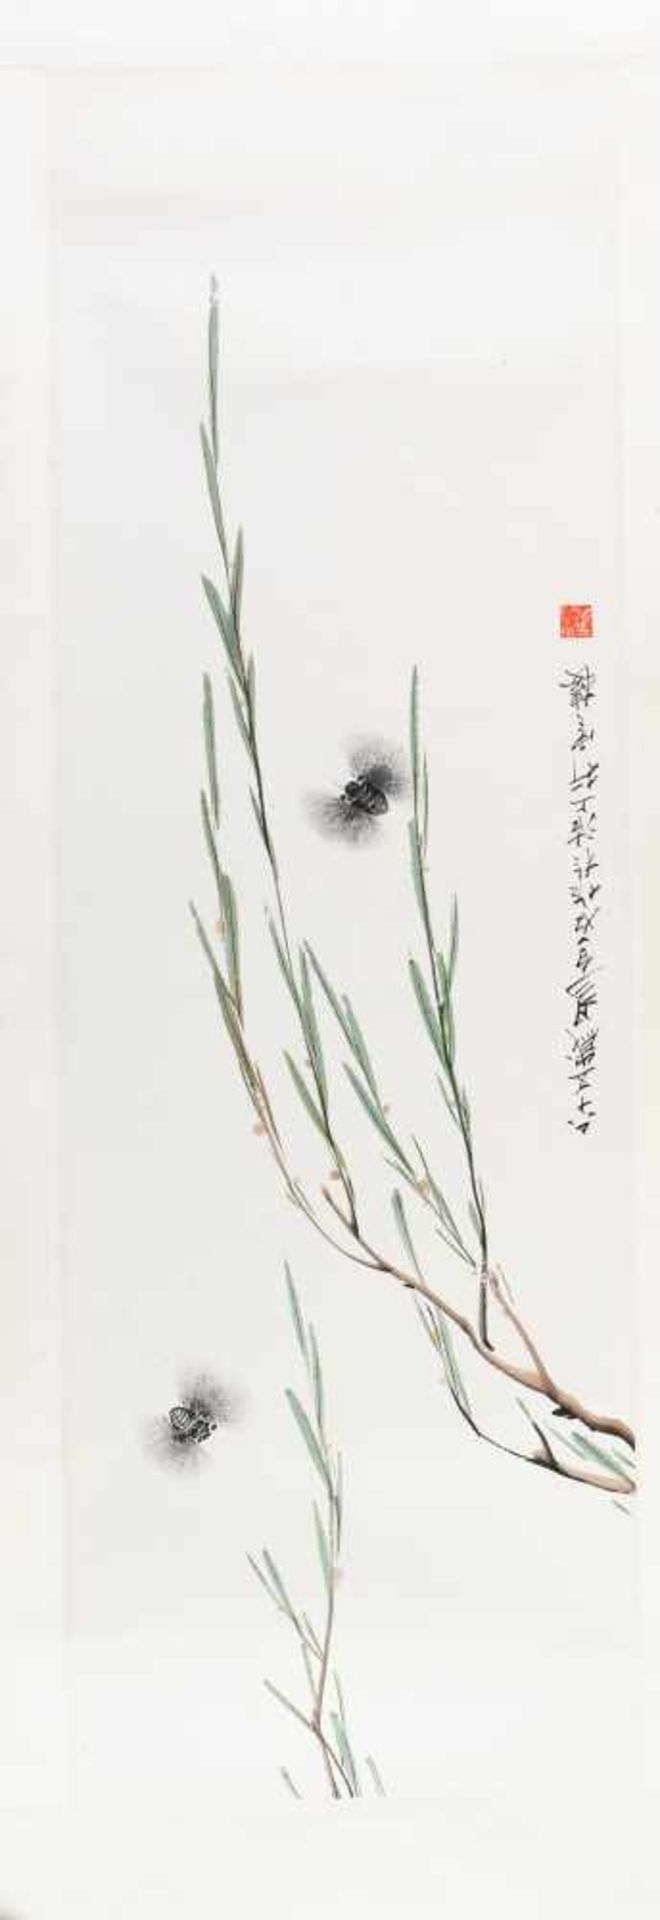 Yi, Baishi(China, 1929 - 2008) Tusche, Farbe/ Papier. Zikaden und Weidenzweige. Sign. u. Siegel.